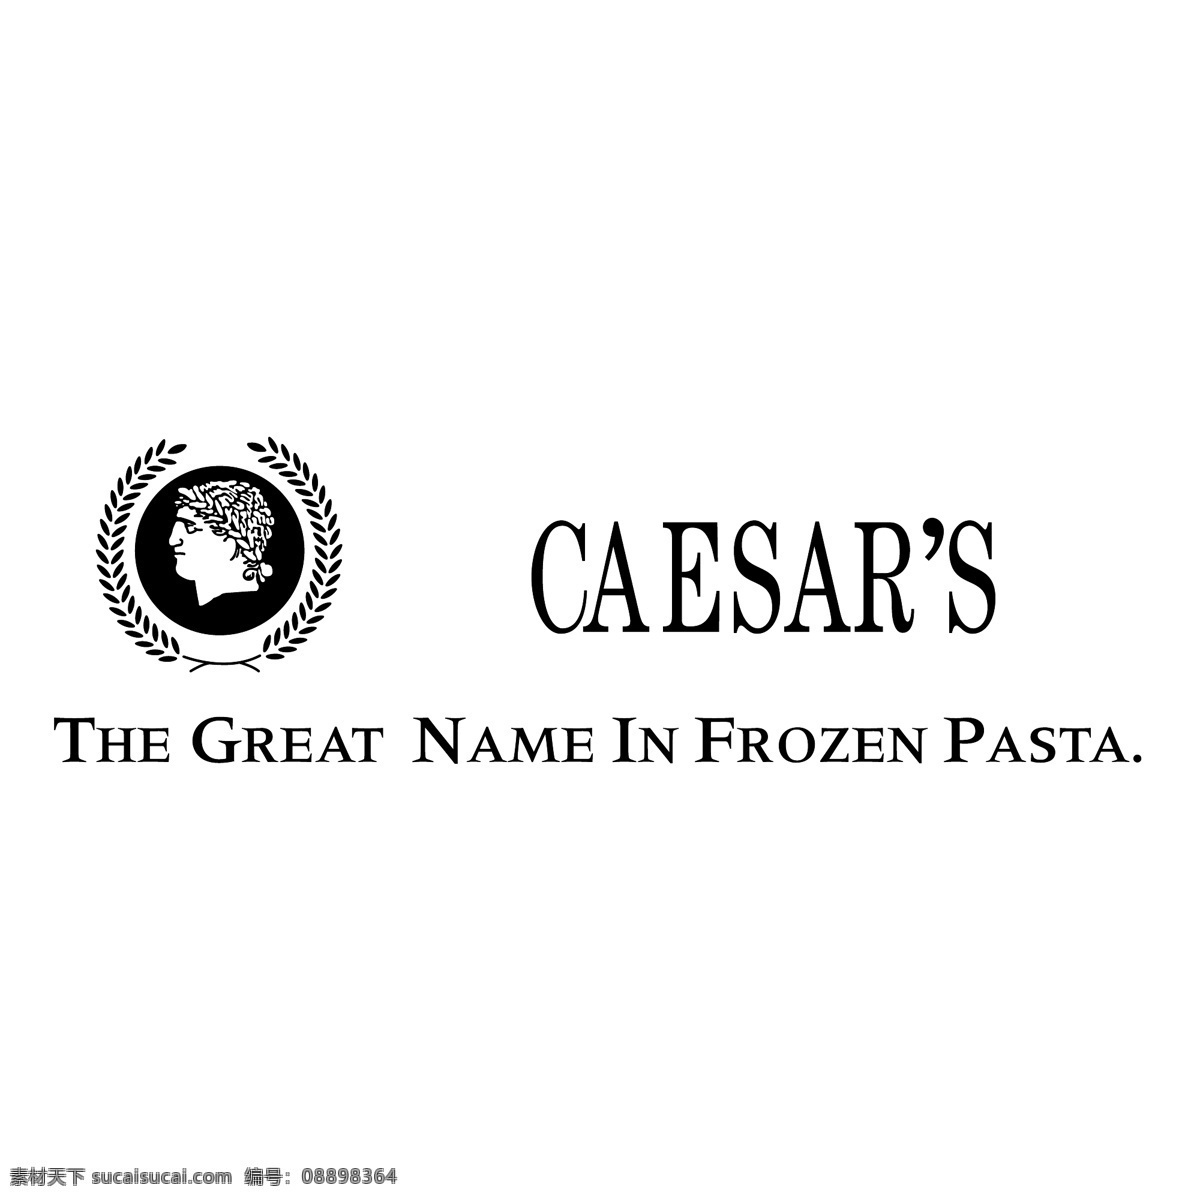 凯撒0 凯撒 小凯撒比萨饼 小凯撒 凯撒宫 矢量 矢量凯撒 凯撒矢量标志 标志的凯撒 标志 凯撒的标志 矢量图 建筑家居